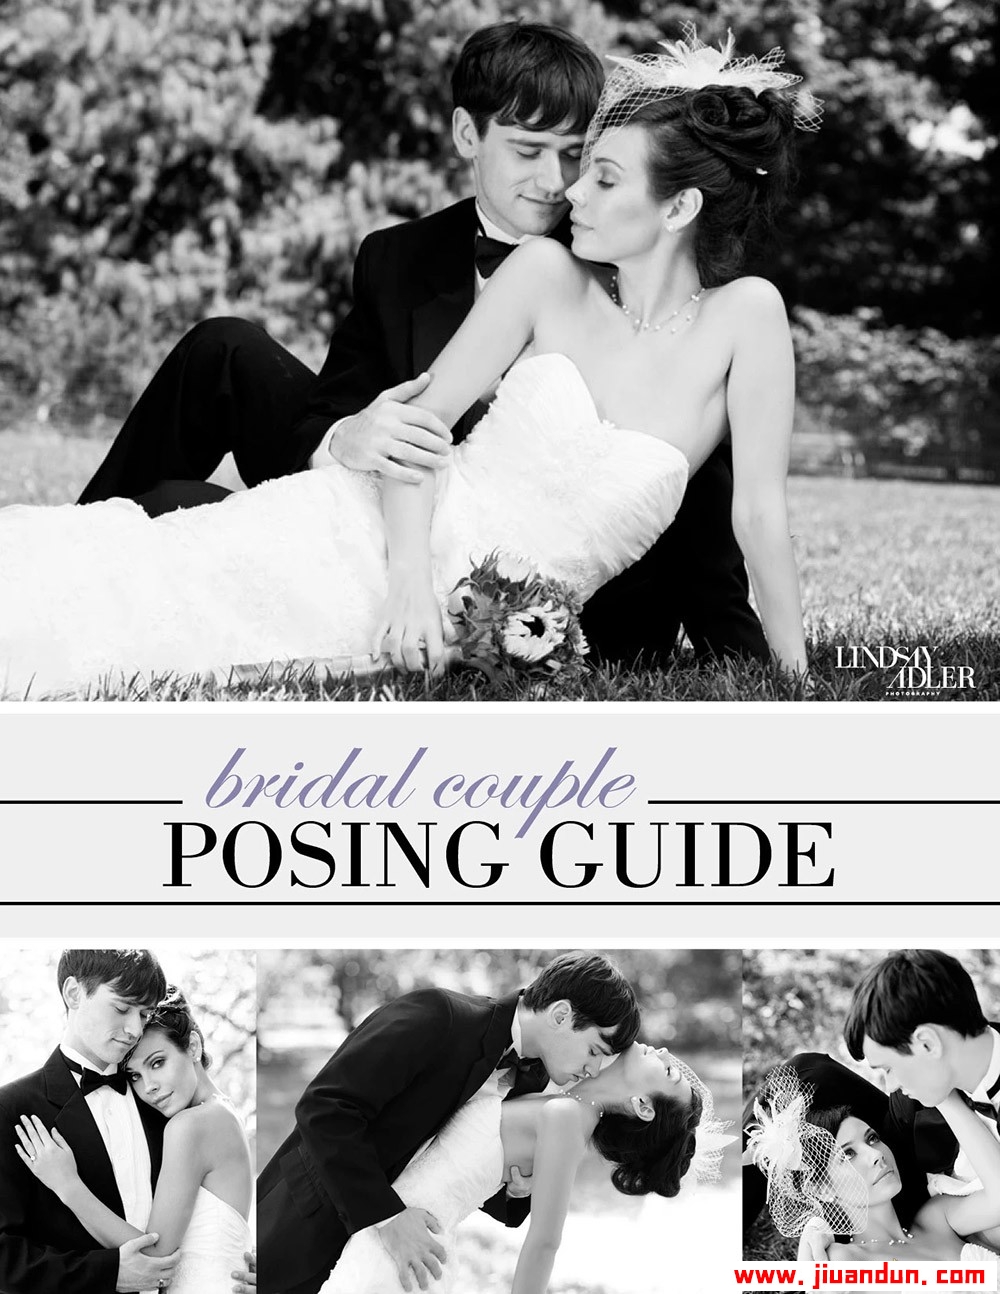 时尚摄影师Lindsay Adler新婚夫妇合影摆姿势指南PDF英文版教程 摄影 第1张